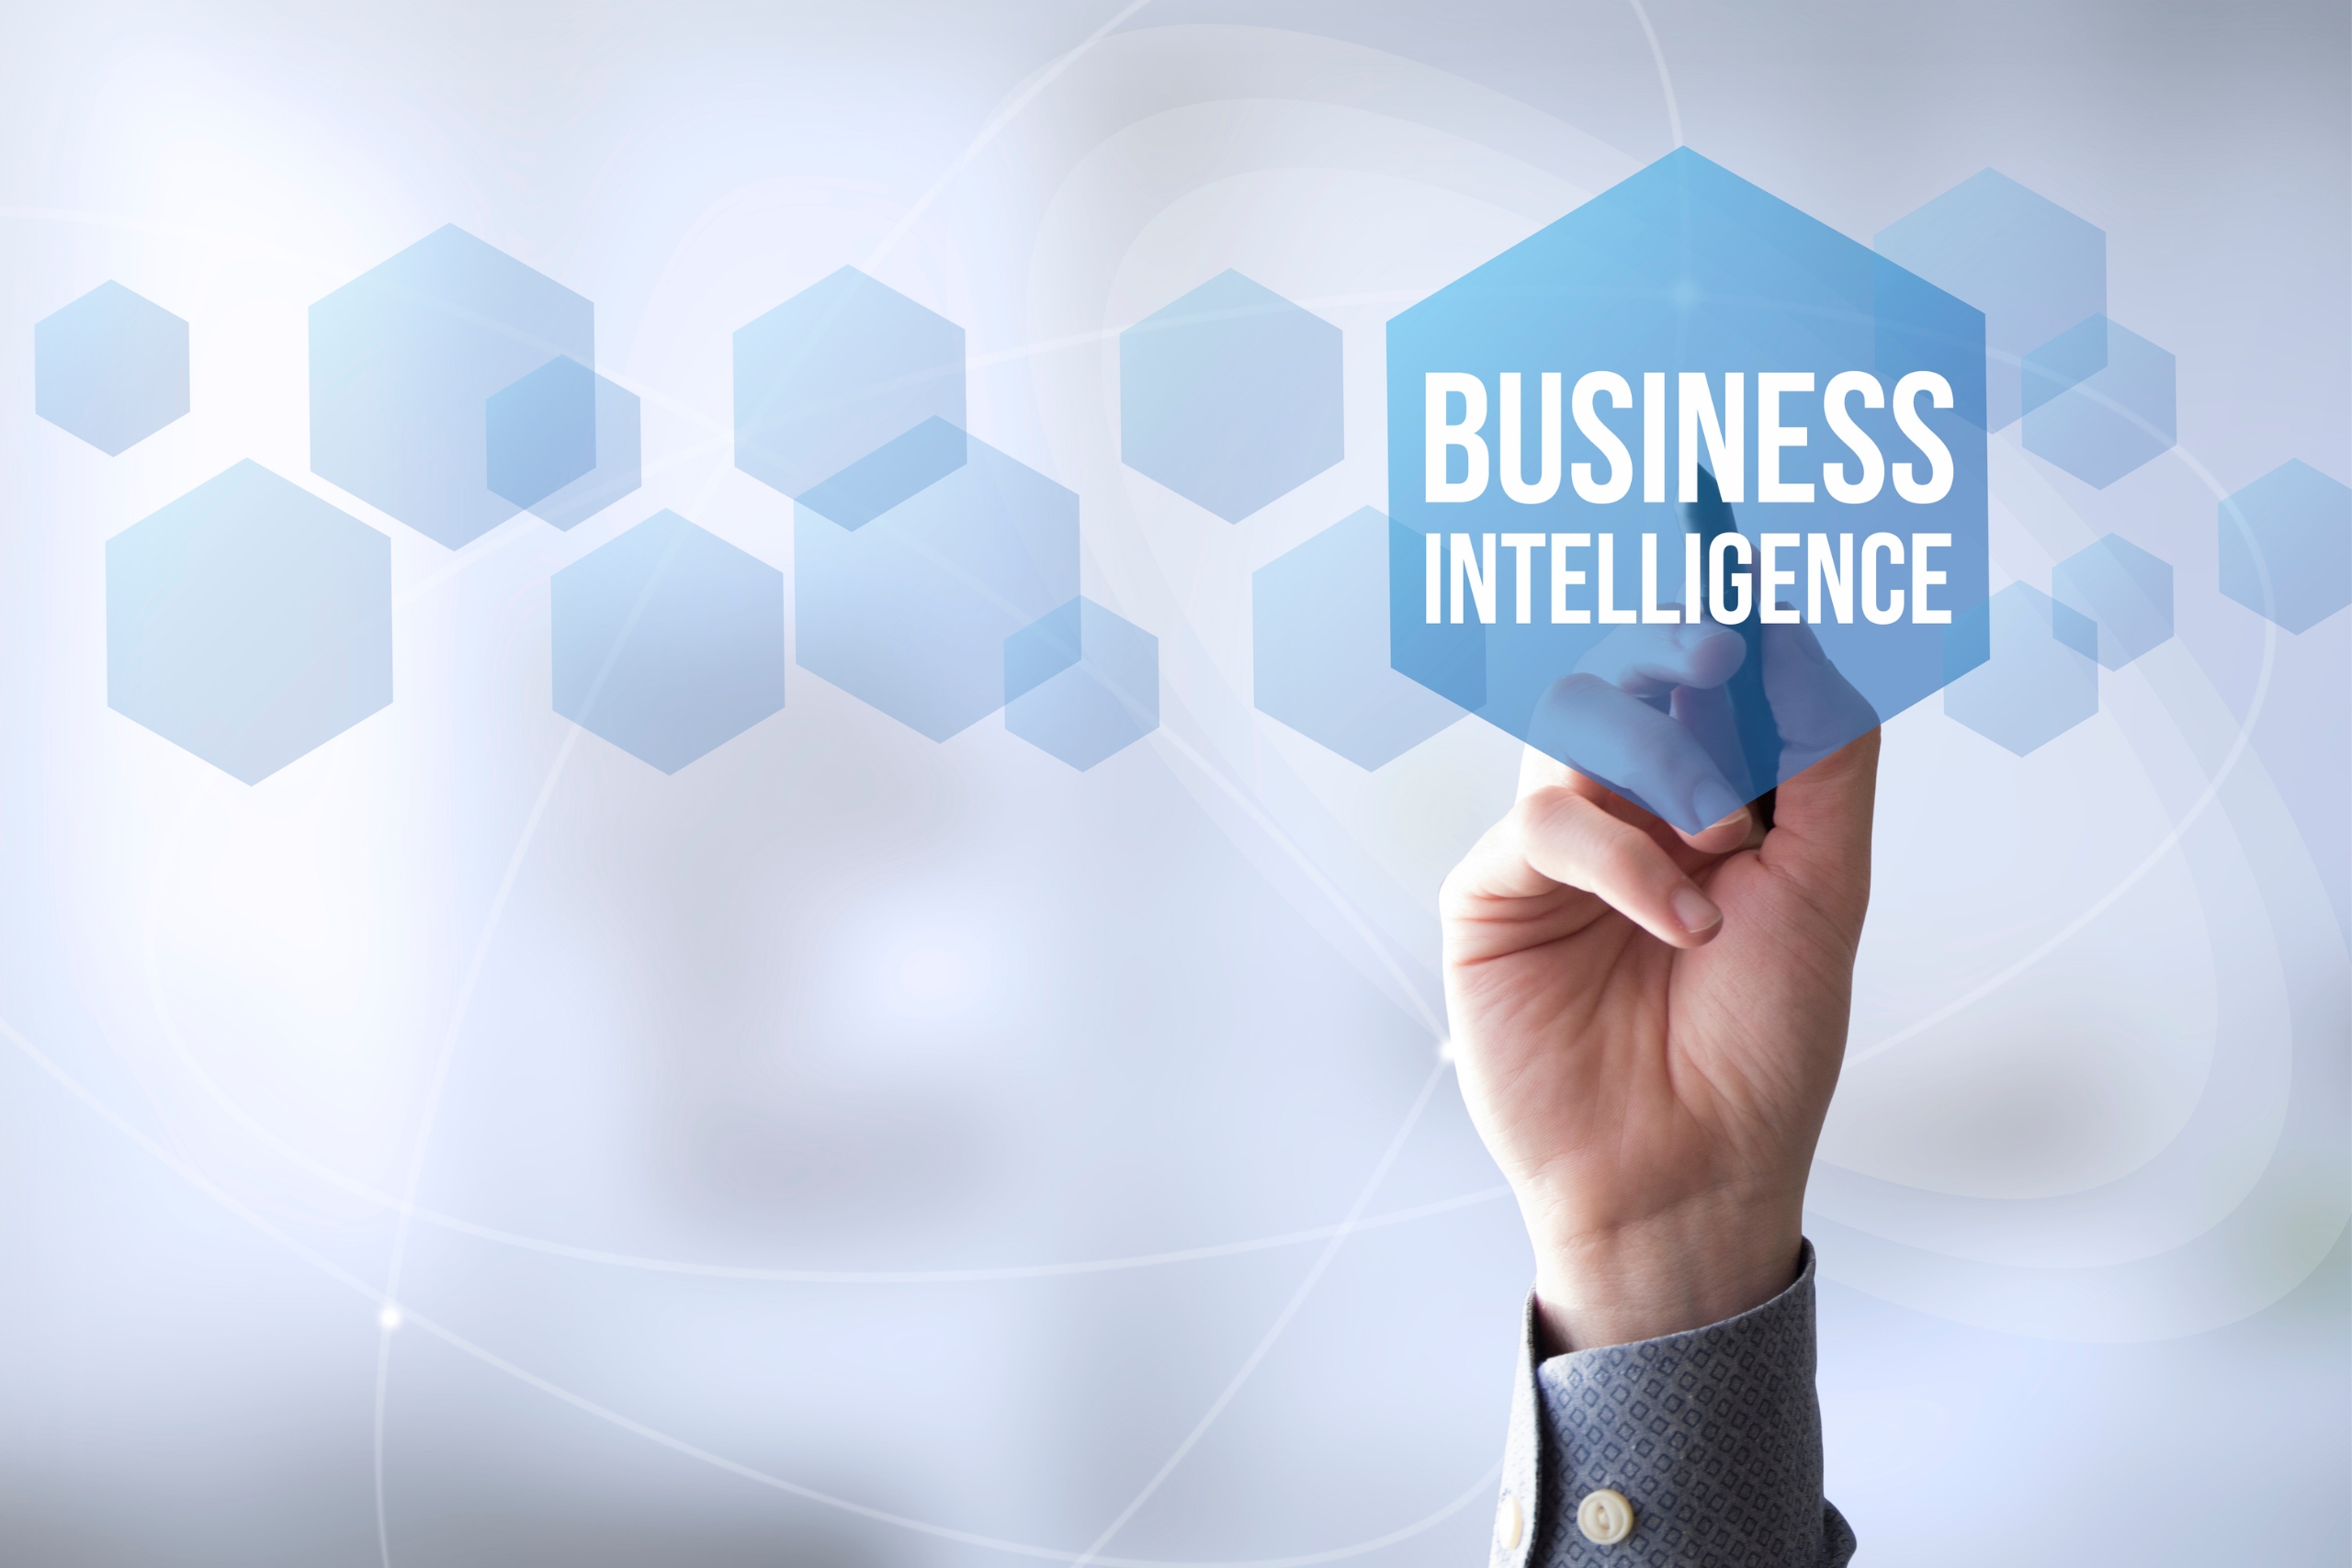 A mesterséges intelligencia hasznosítása az üzleti intelligenciában a versenyelőny érdekében